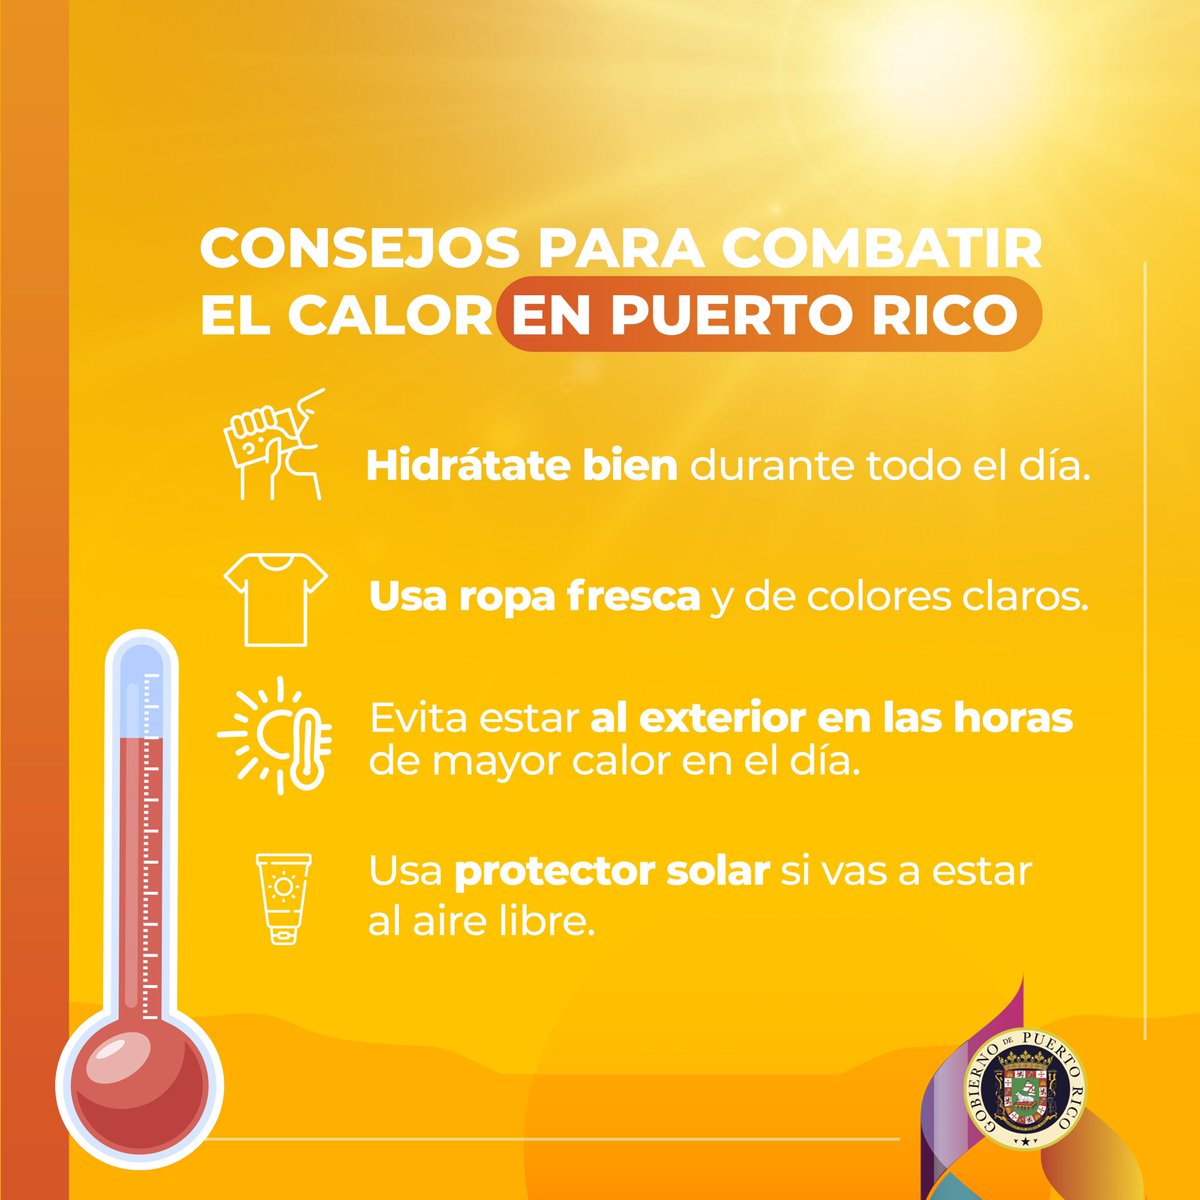 Hoy nos esperan altas temperaturas en Puerto Rico con un Aviso de Calor Excesivo desde las 10:00 a.m hasta las 6:00 p.m. Compartimos una serie de consejos para proteger el bienestar de todos y todas. ¡Cuida de ti y de los tuyos!